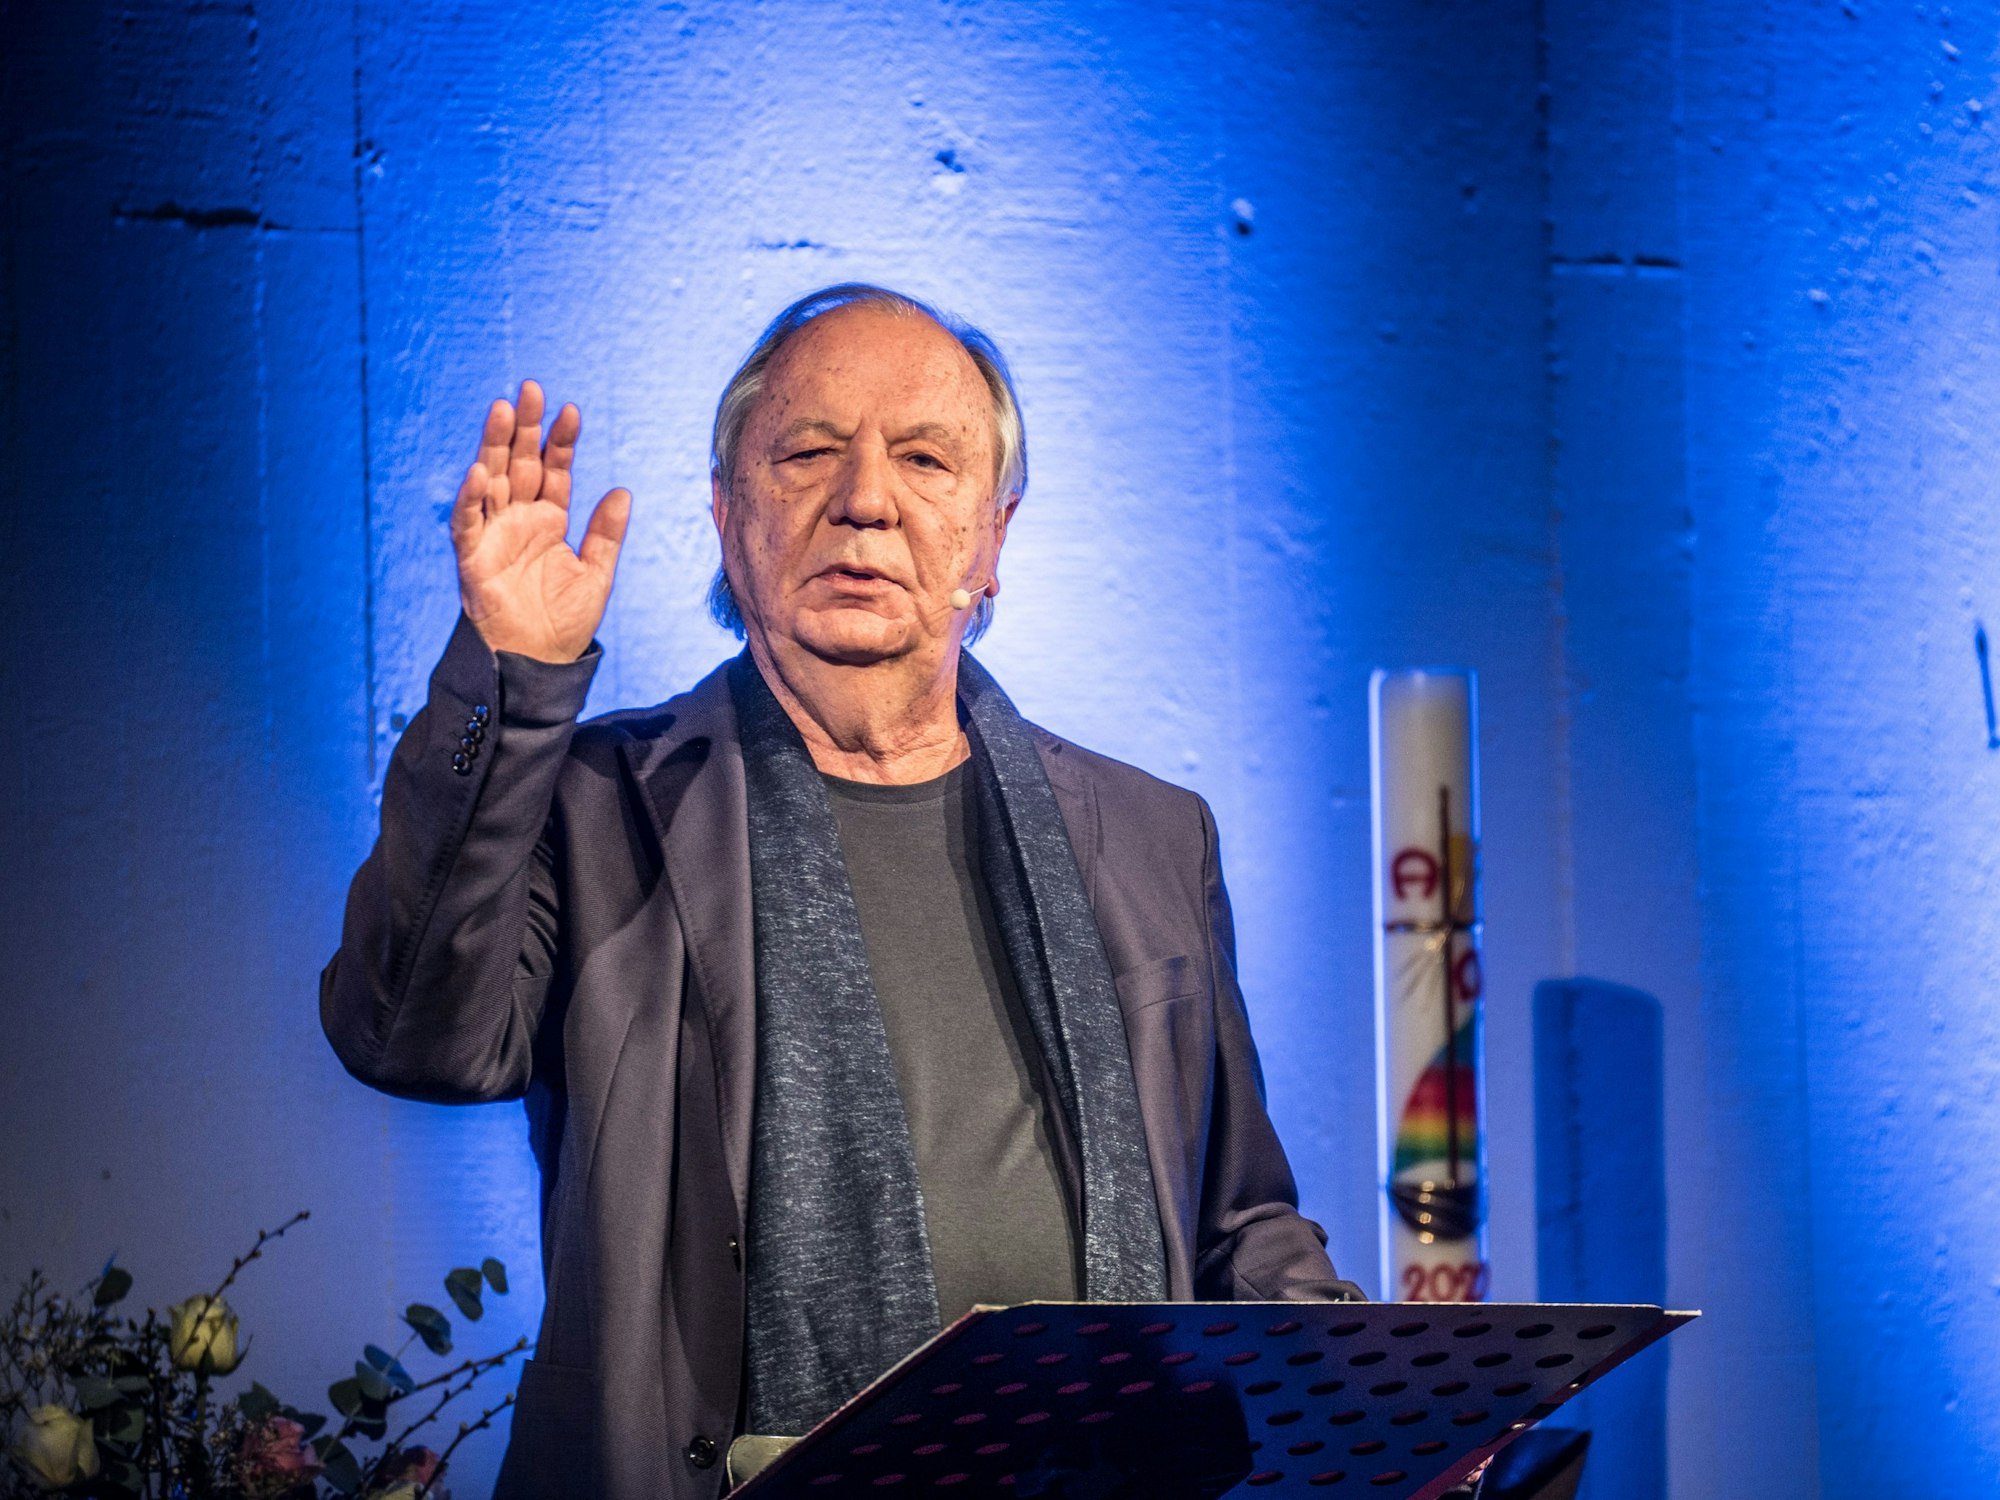 Kabarettist Wilfried Schmickler gestikuliert an einem Pult in der Friedenskirche Waldsiedlung.